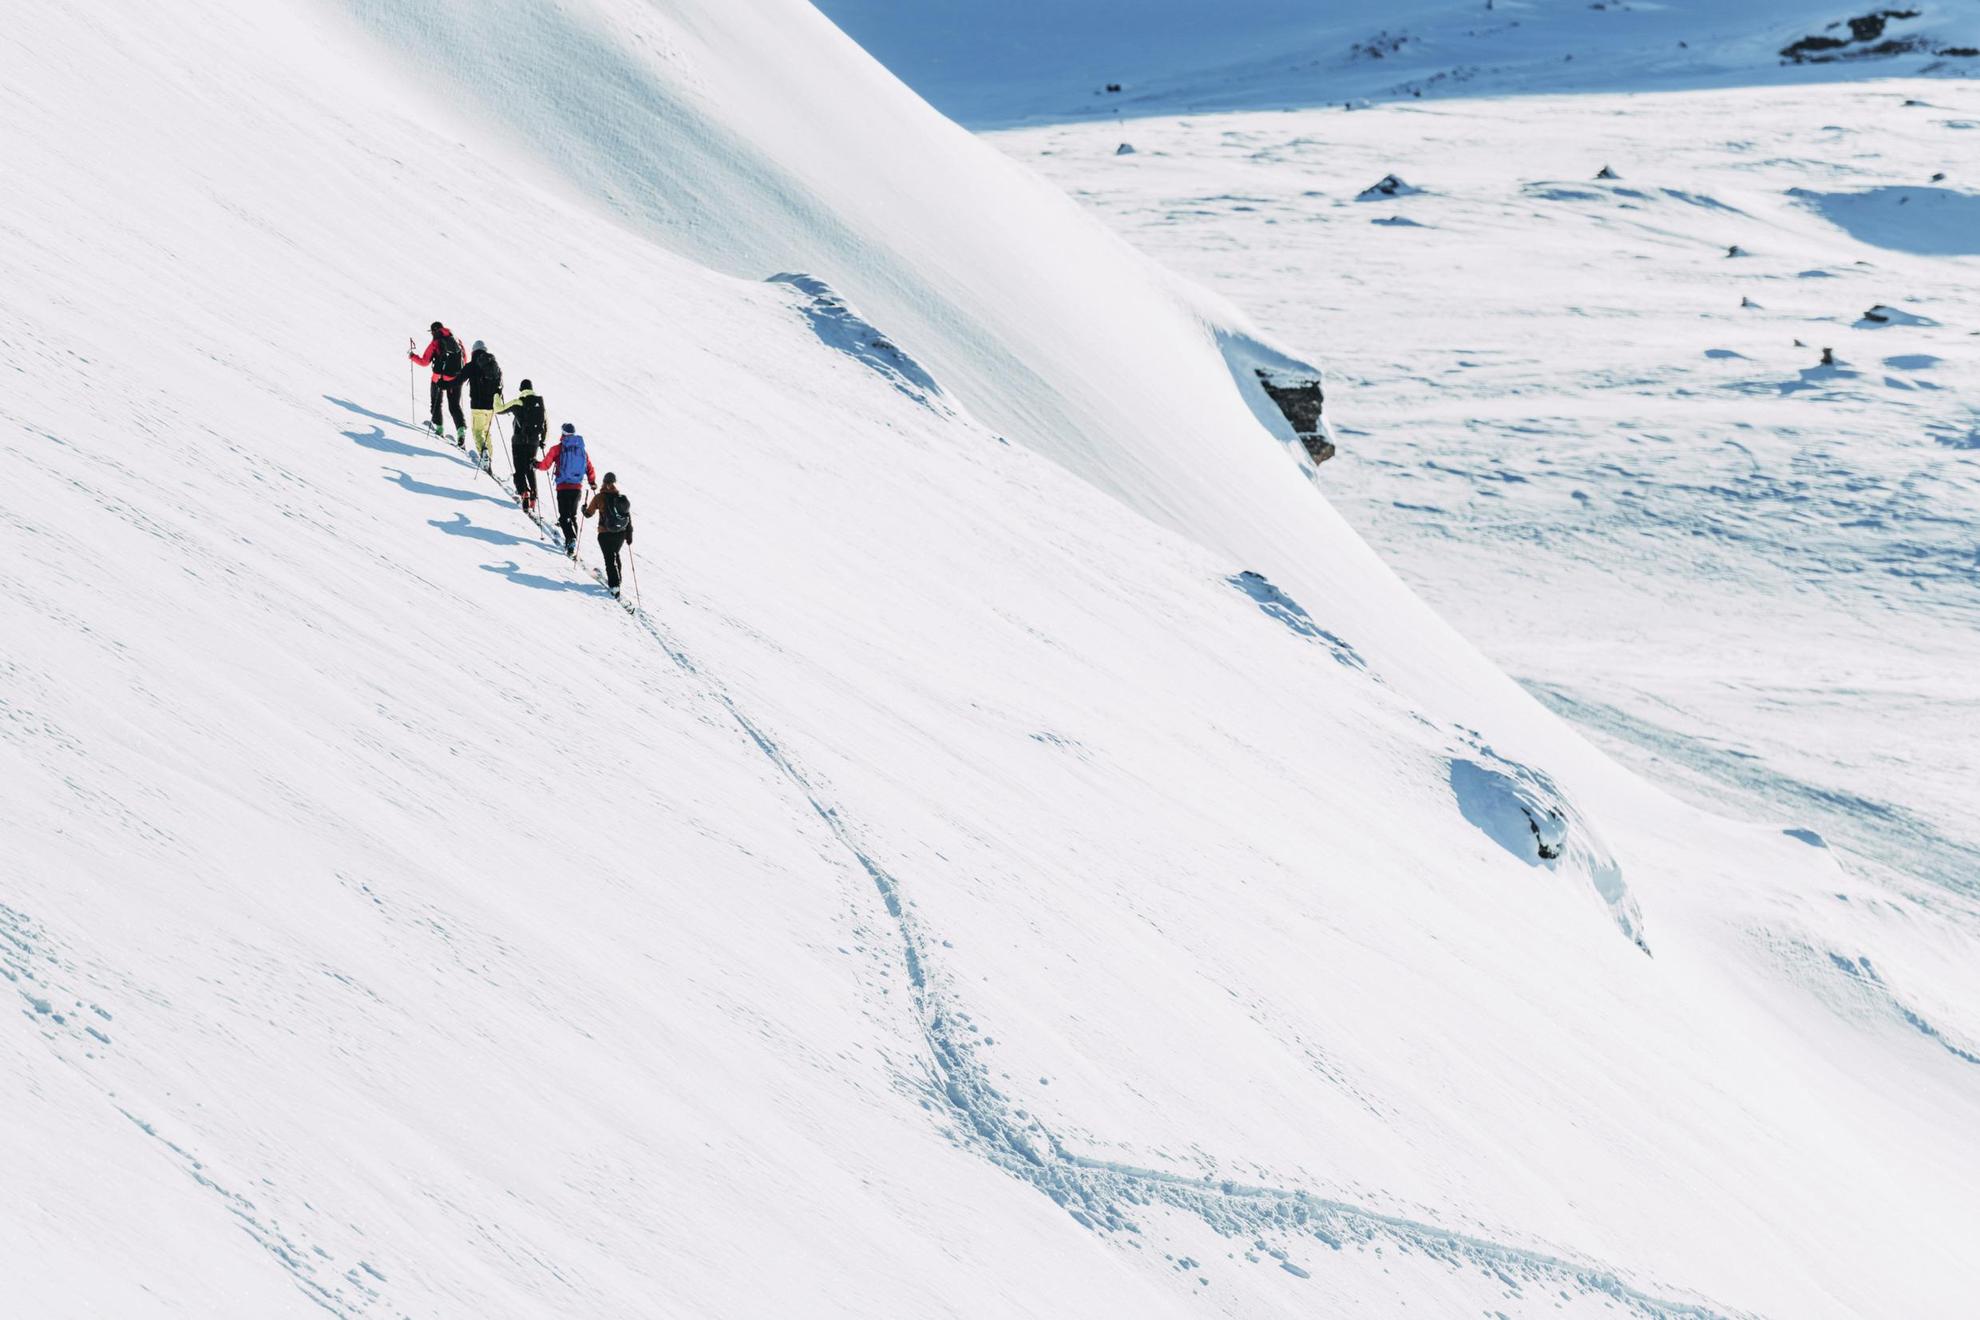 Cinq personnes à skis gravissent une montagne enneigée.